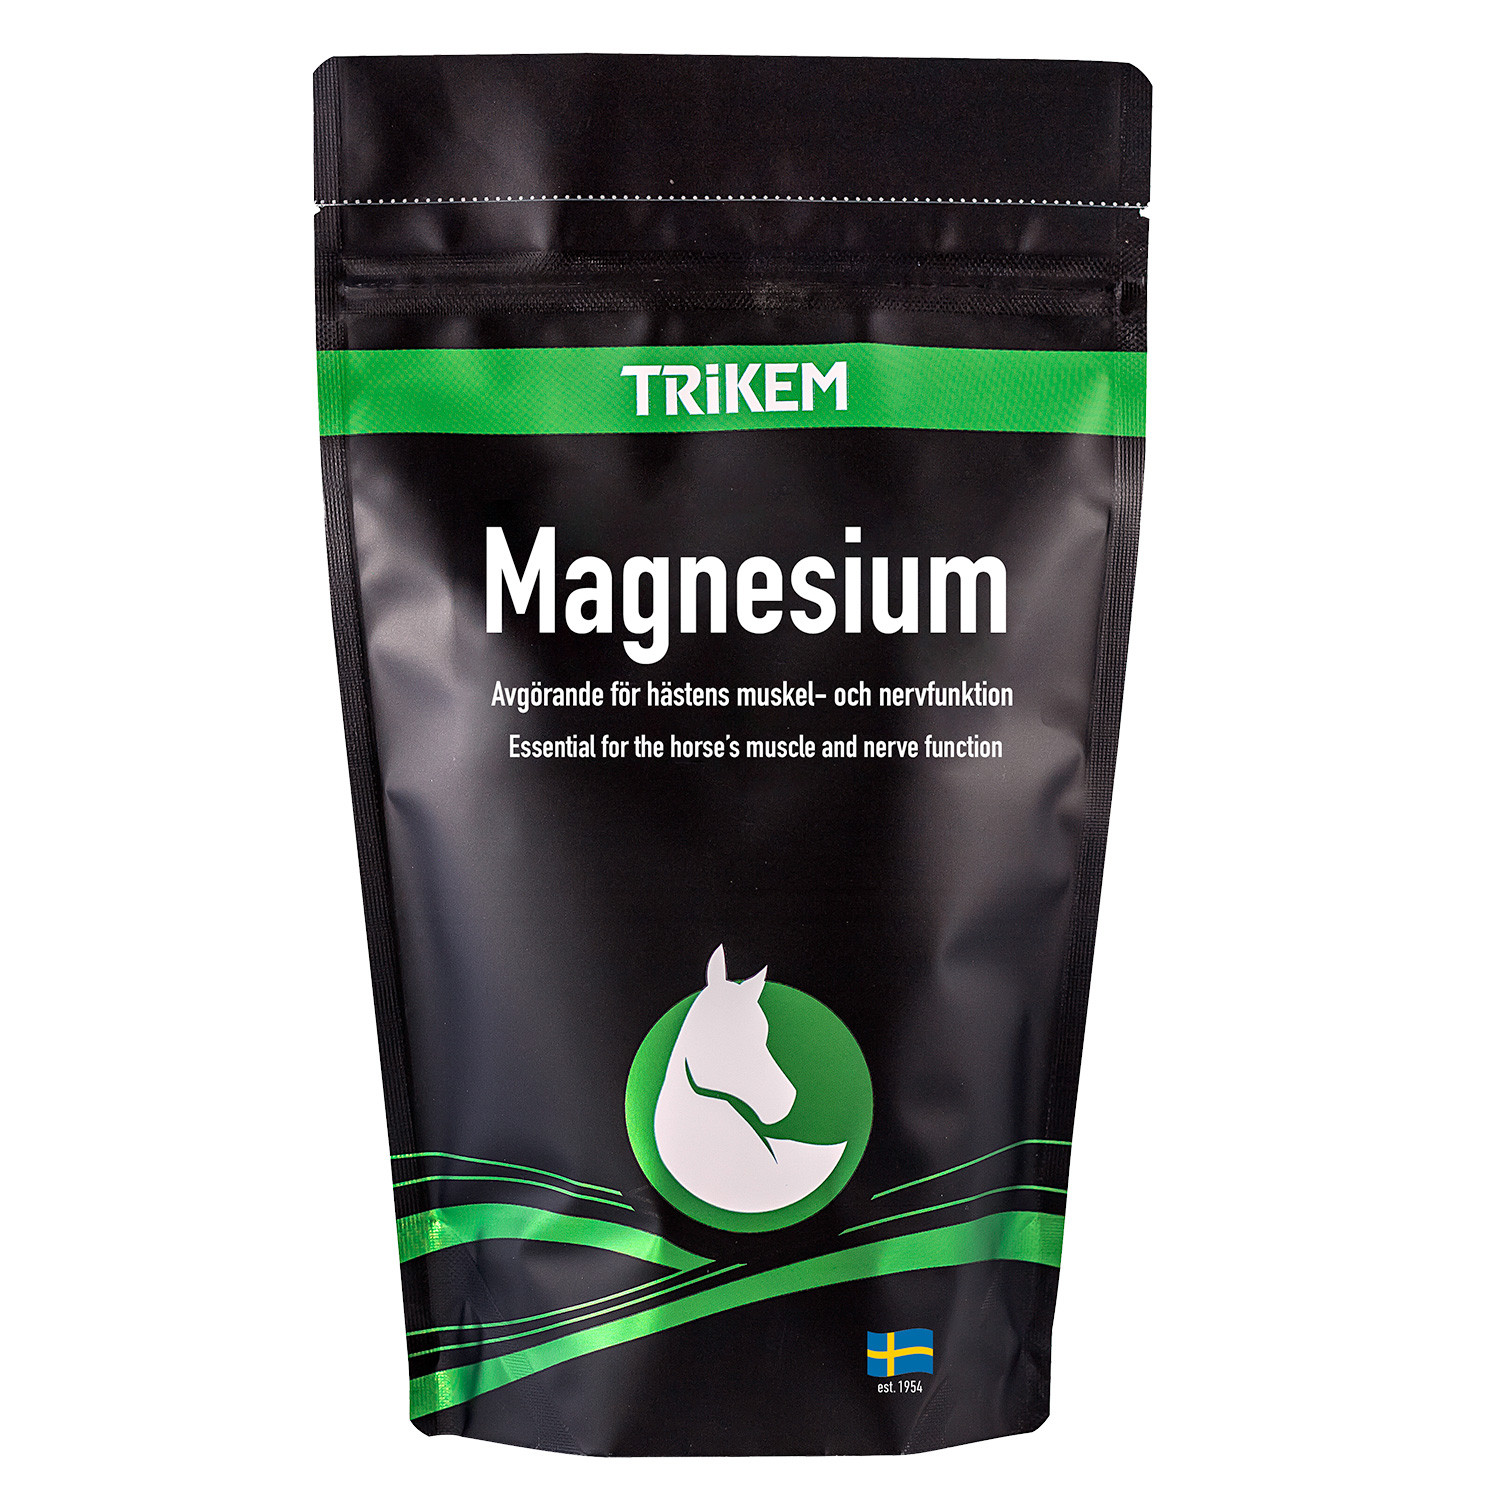 Trikem magnesium 750g